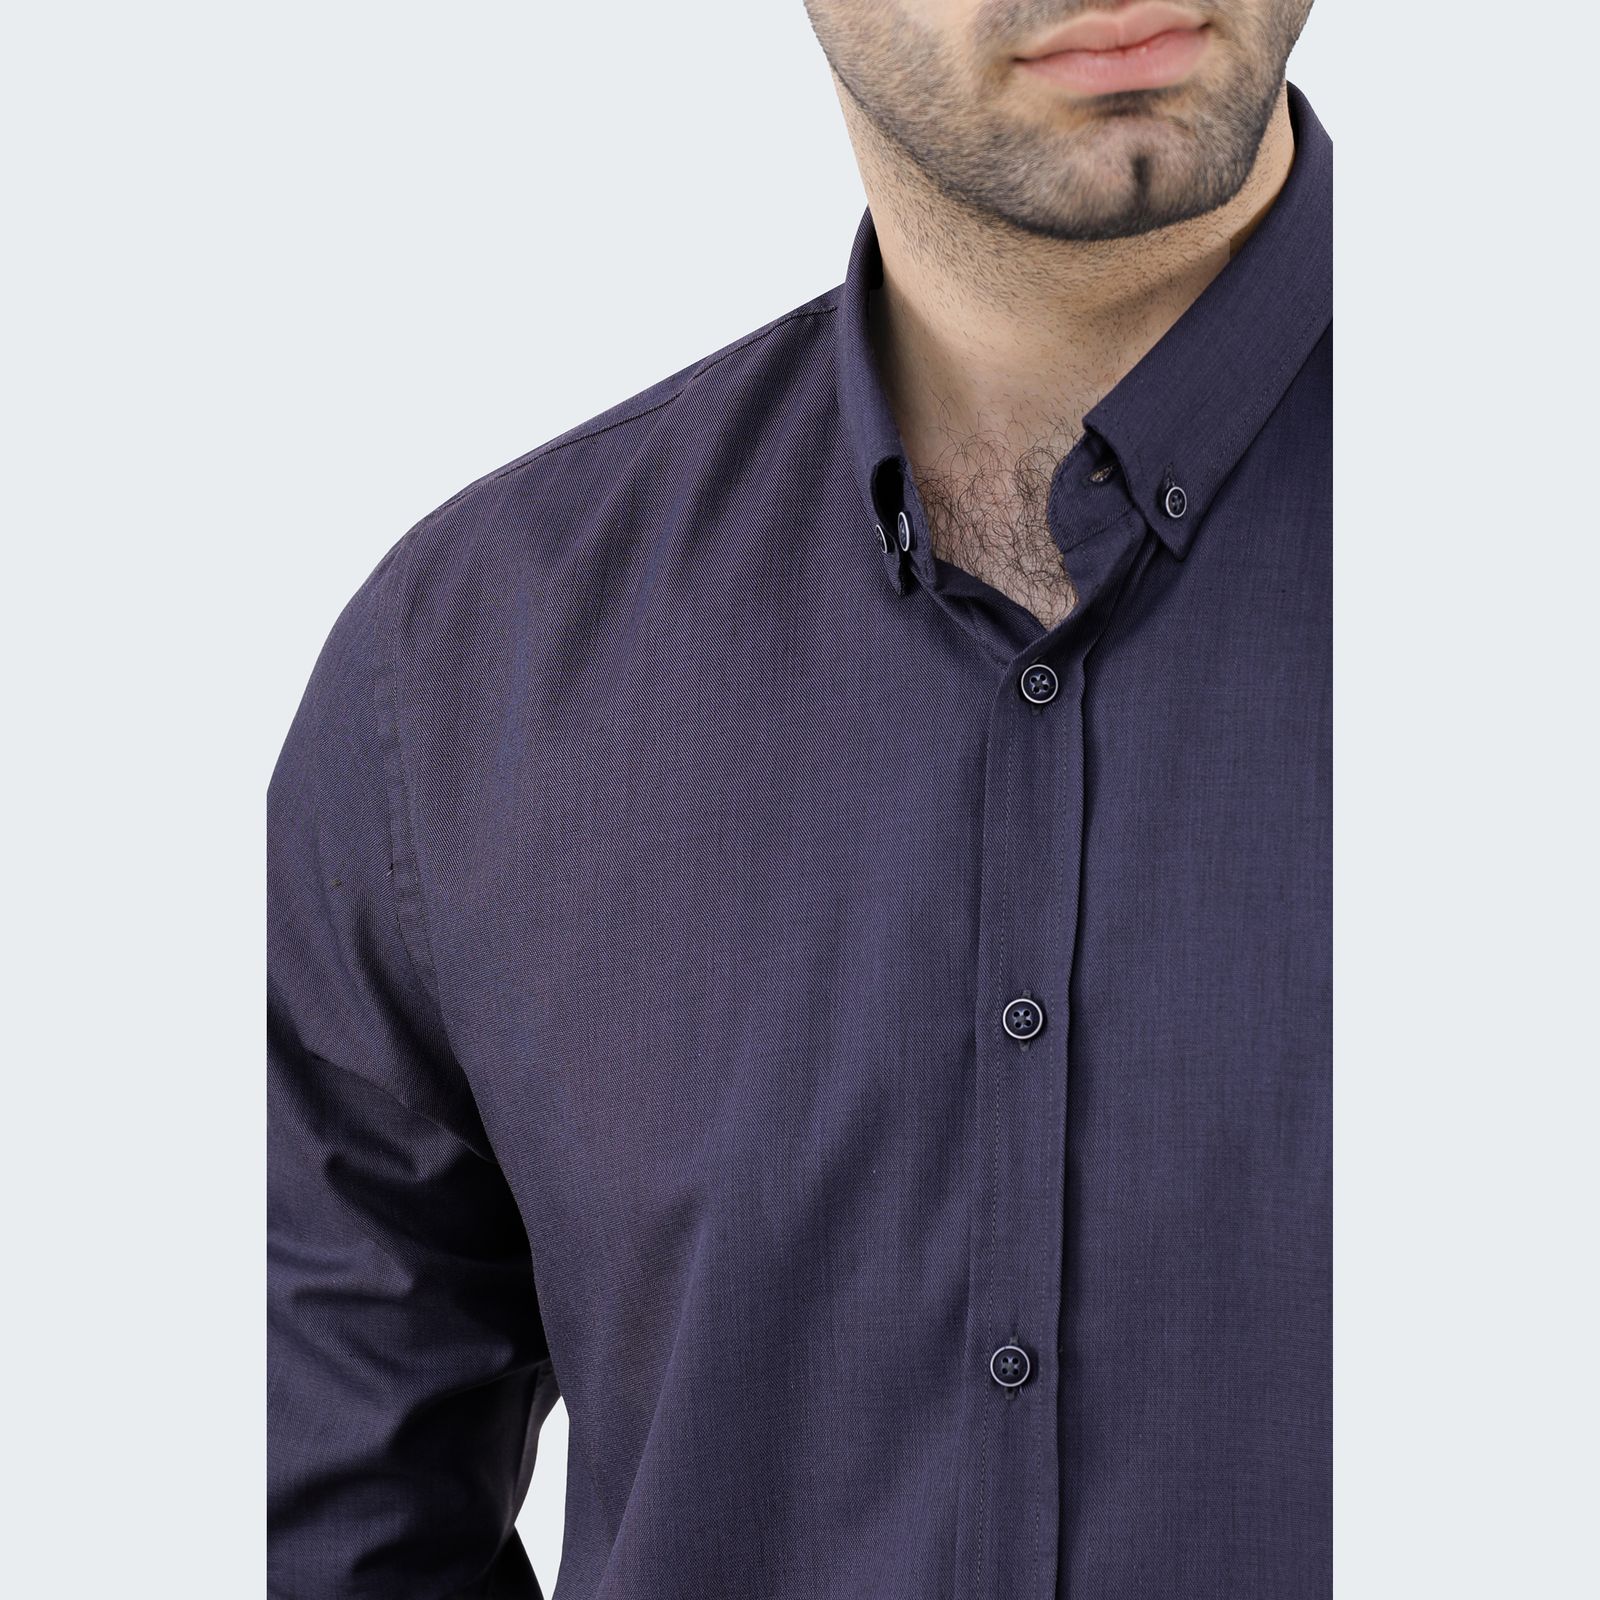 پیراهن آستین بلند مردانه پاتن جامه مدل تترون 102821020284539 -  - 5